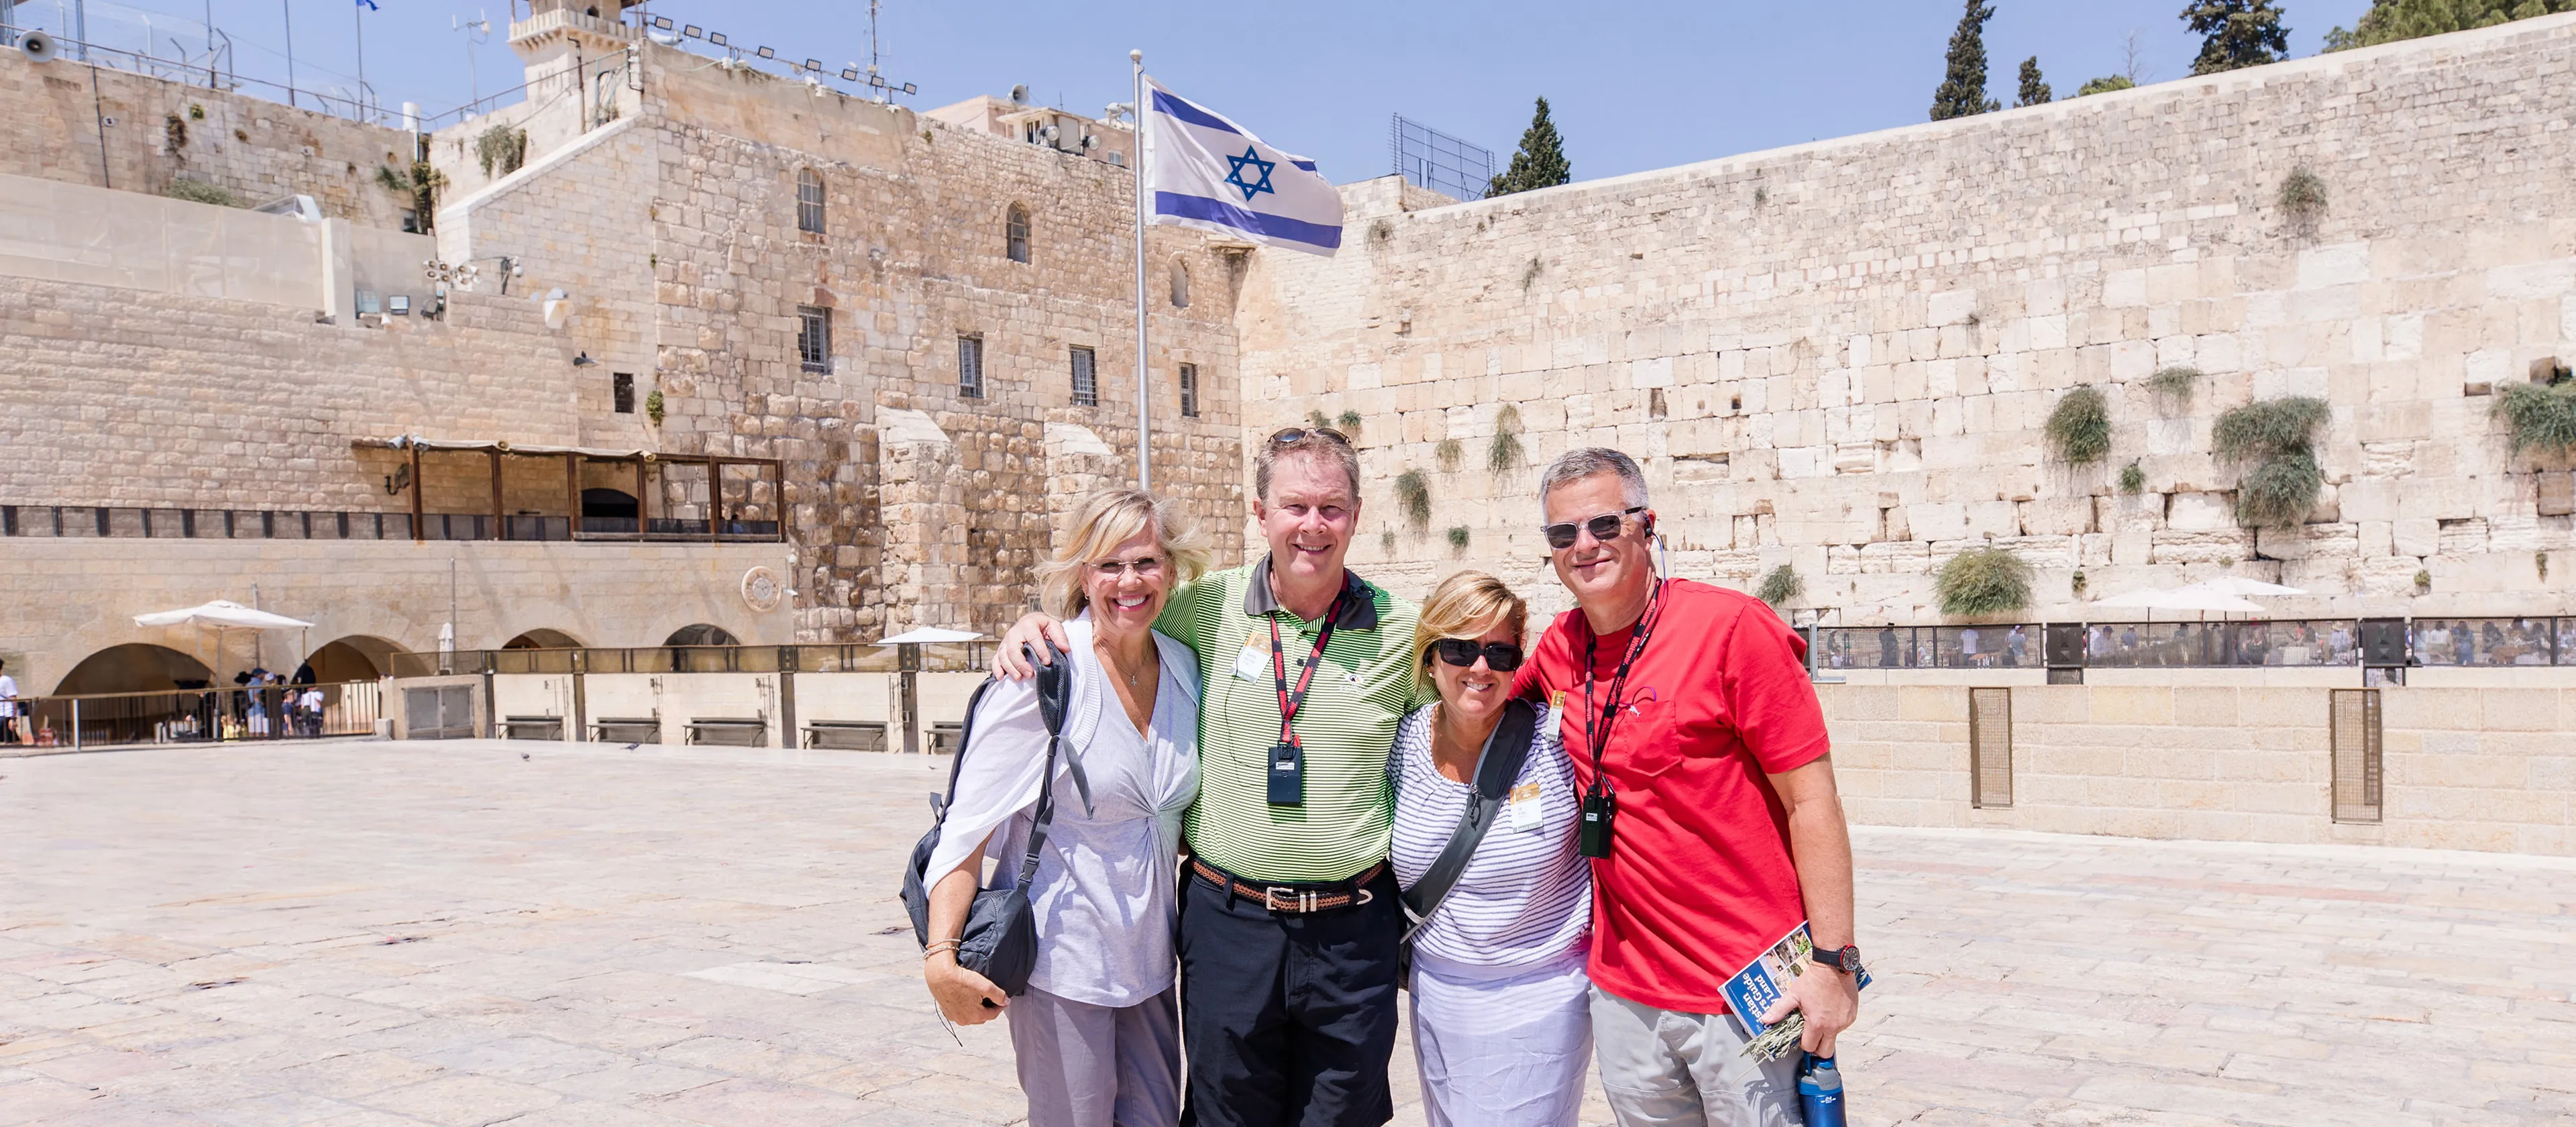 Group of travelers in Israel